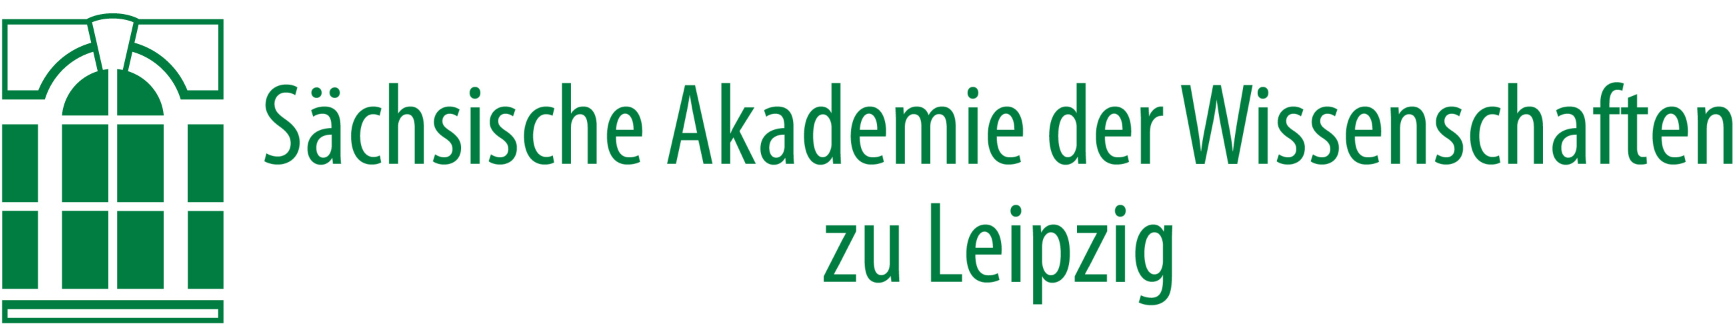 Link zur Sächsischen Akademie der Wissenschaften